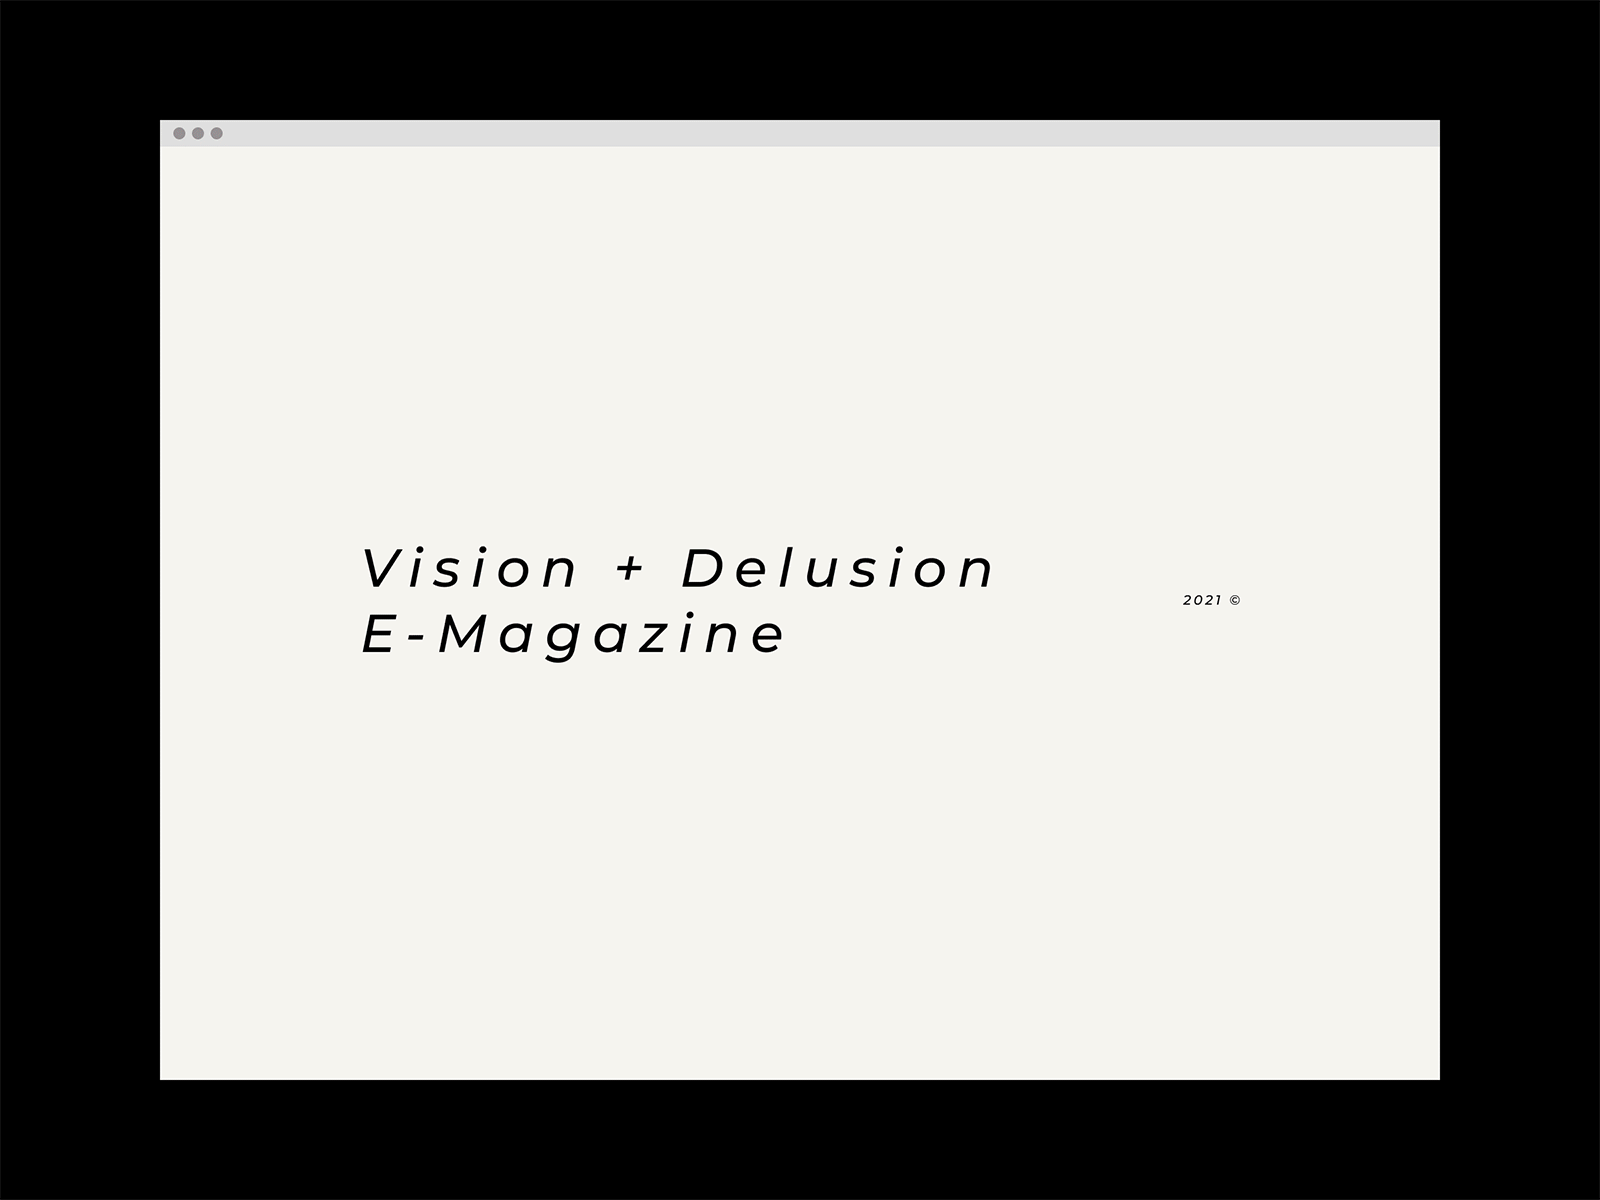 Vision + Delusion - E-Magazine | UI/UX